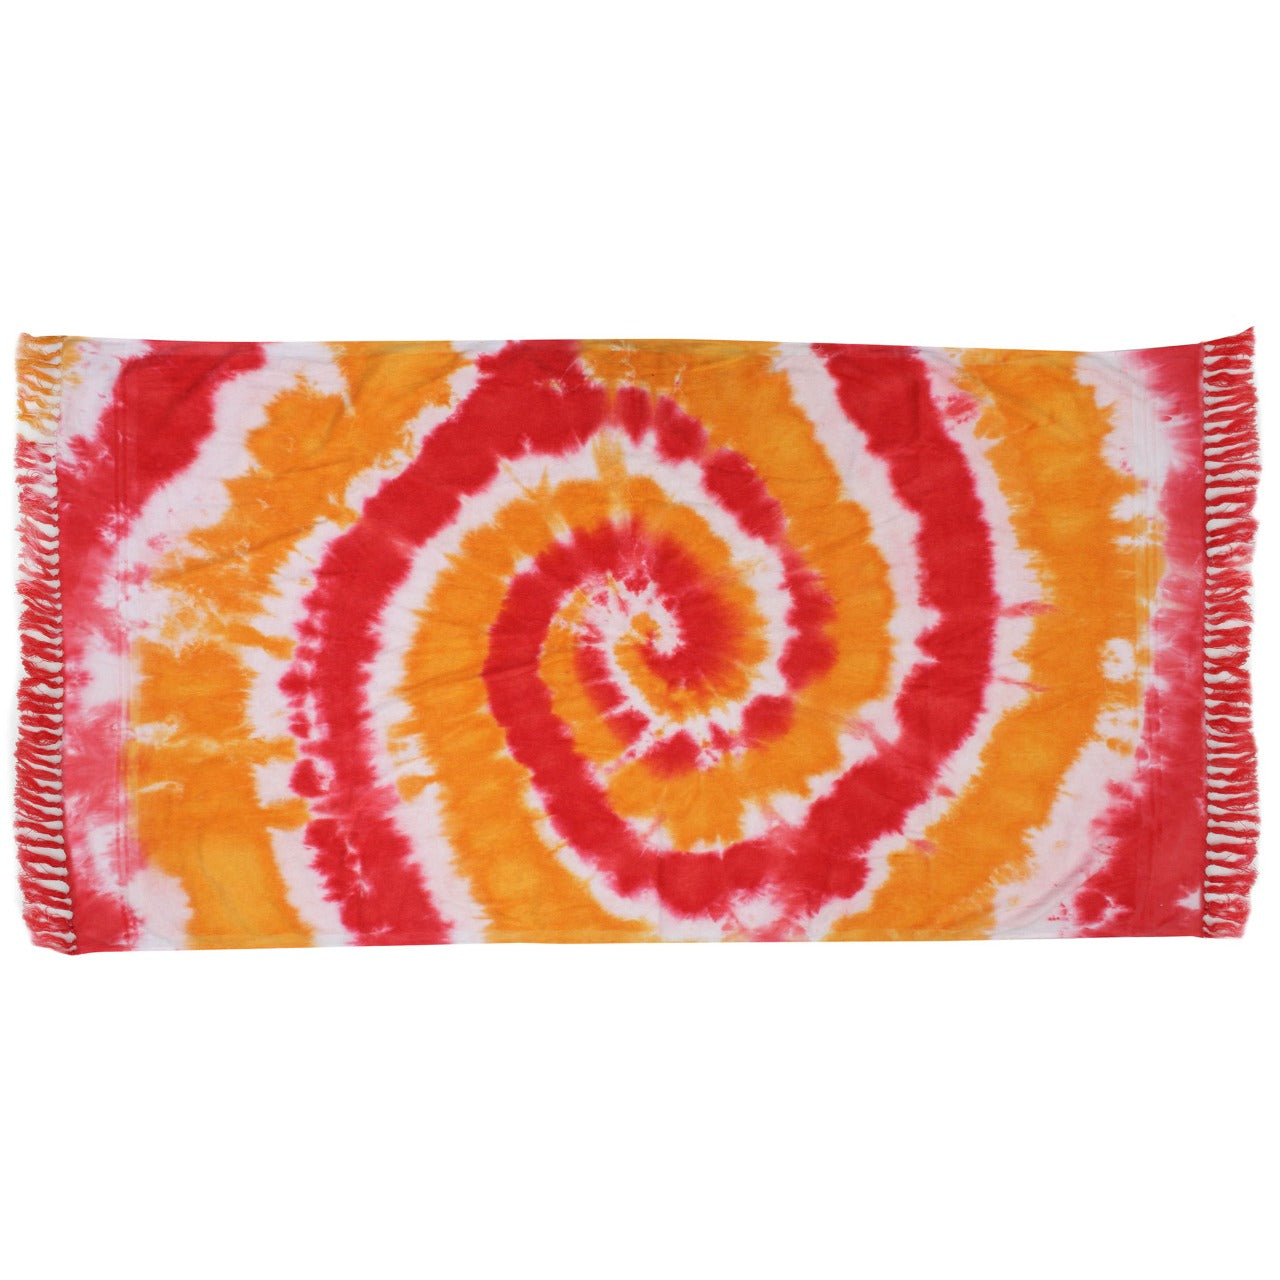 Red/Orange Swirl Tie Dye Beach Towel